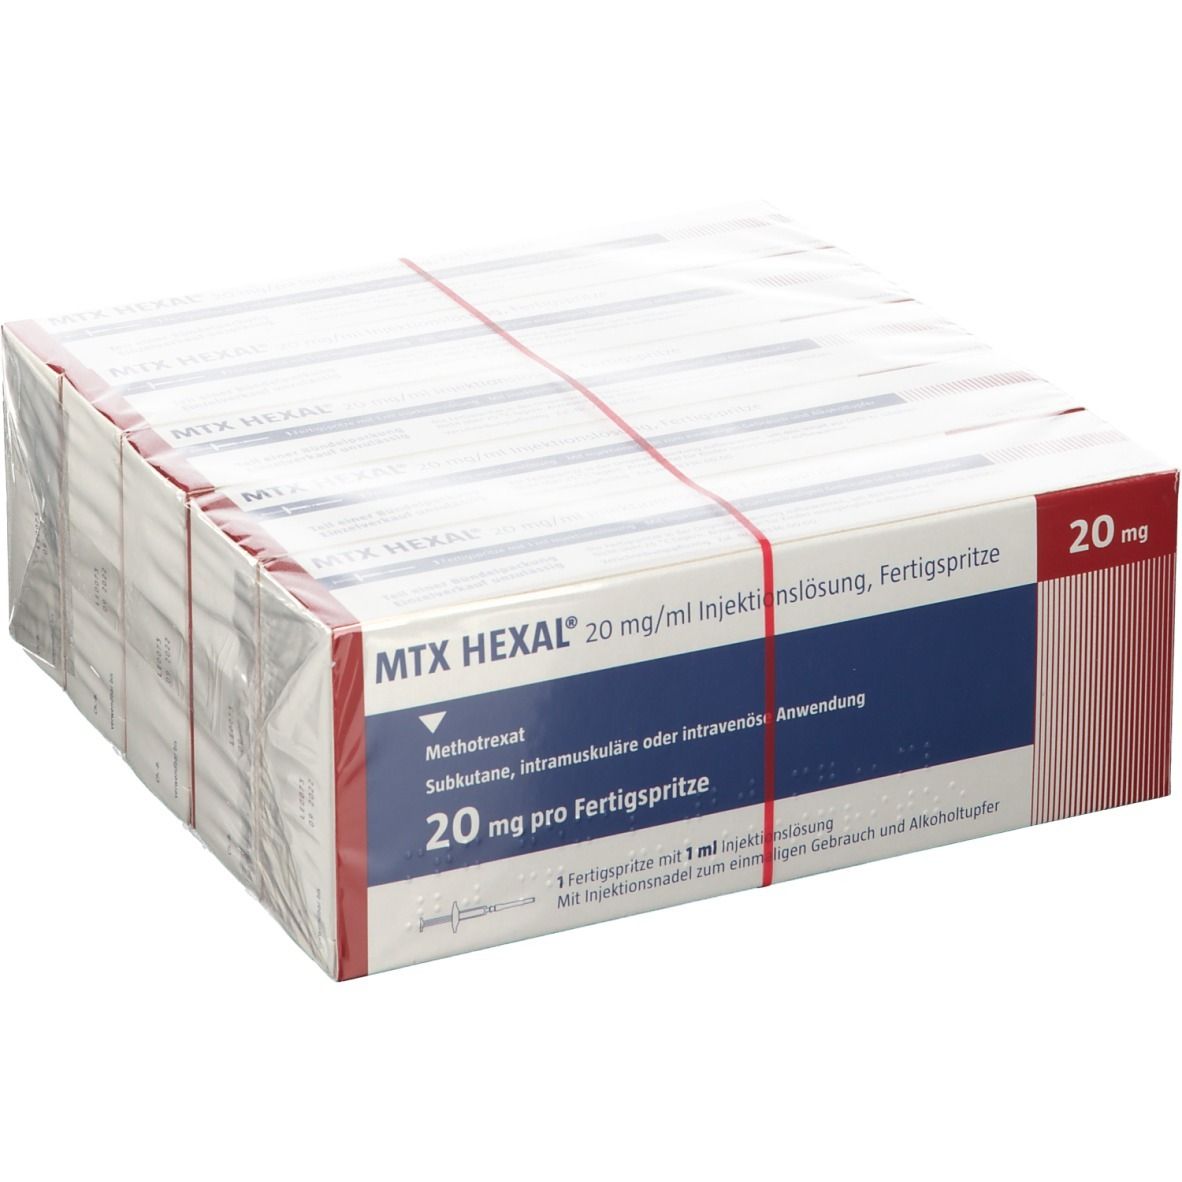 MTX HEXAL® 20 mg/ml